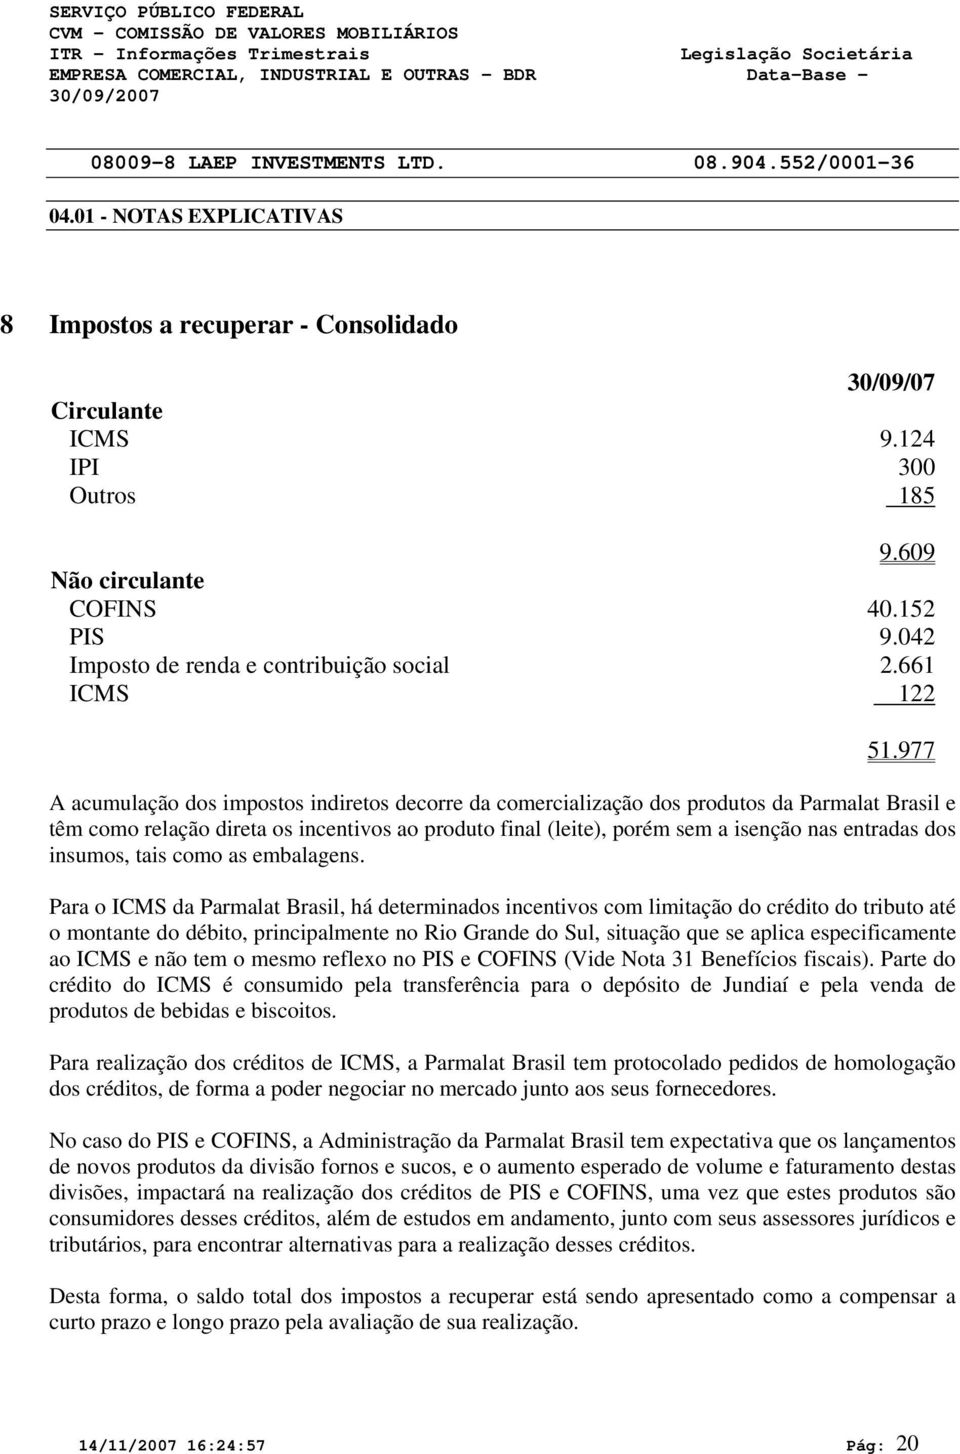 977 A acumulação dos impostos indiretos decorre da comercialização dos produtos da Parmalat Brasil e têm como relação direta os incentivos ao produto final (leite), porém sem a isenção nas entradas